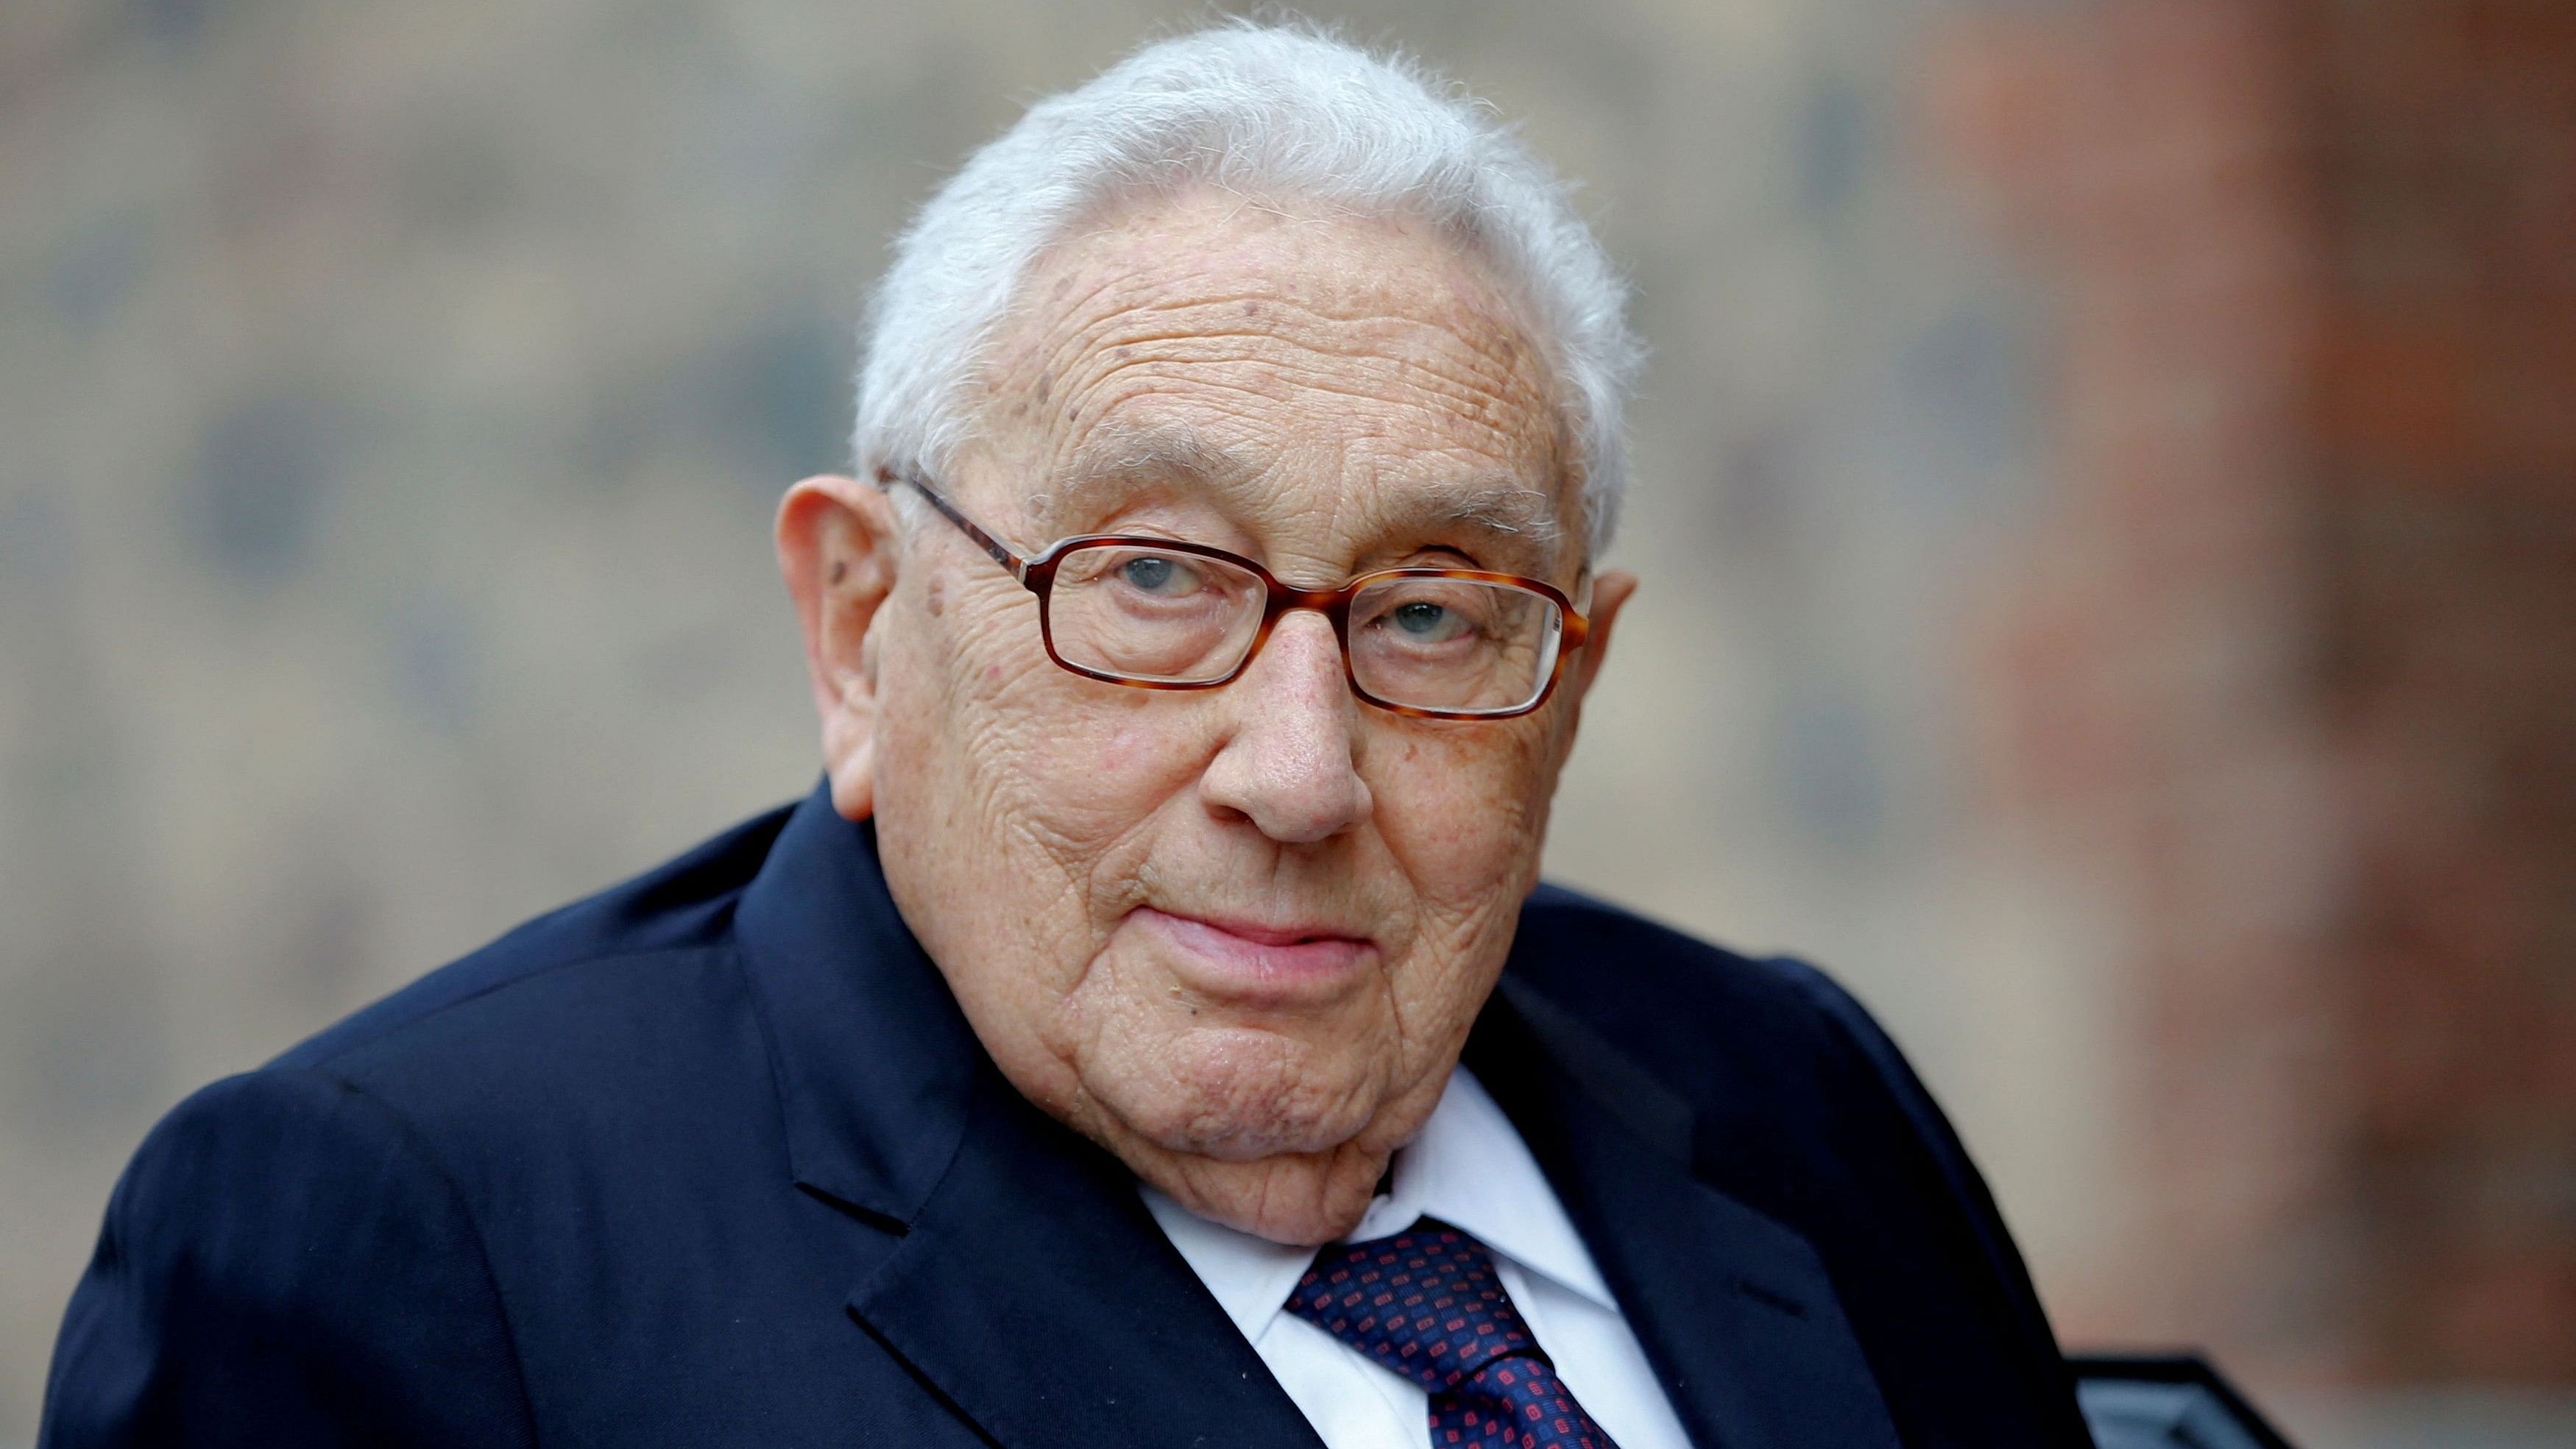 <div class="paragraphs"><p>Former U.S. Secretary of State Henry Kissinger </p></div>